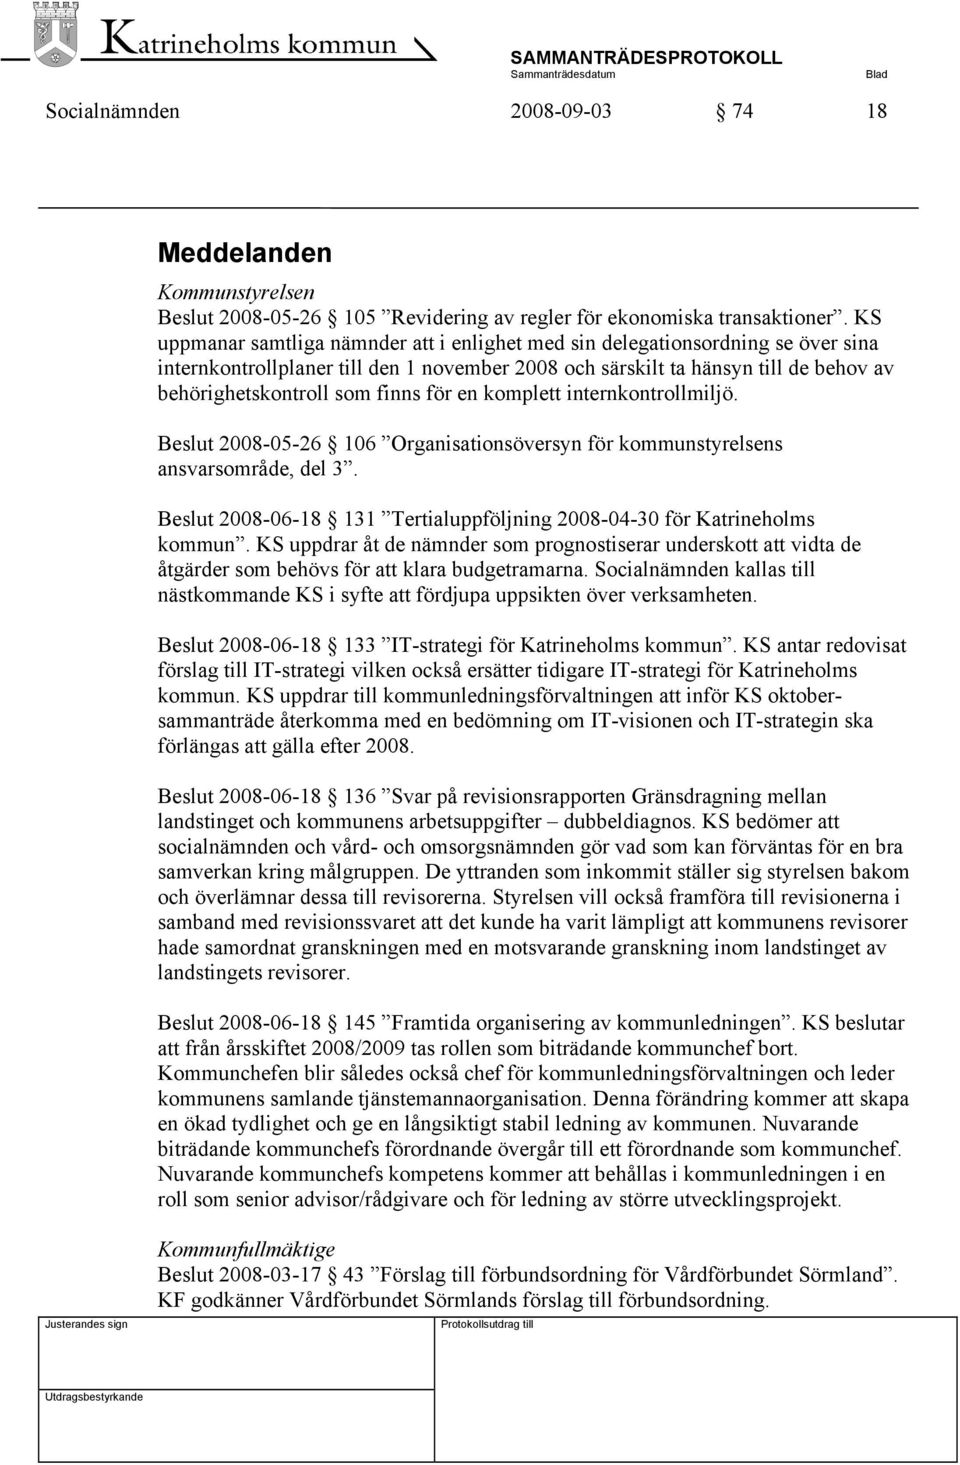 för en komplett internkontrollmiljö. Beslut 2008-05-26 106 Organisationsöversyn för kommunstyrelsens ansvarsområde, del 3. Beslut 2008-06-18 131 Tertialuppföljning 2008-04-30 för Katrineholms kommun.